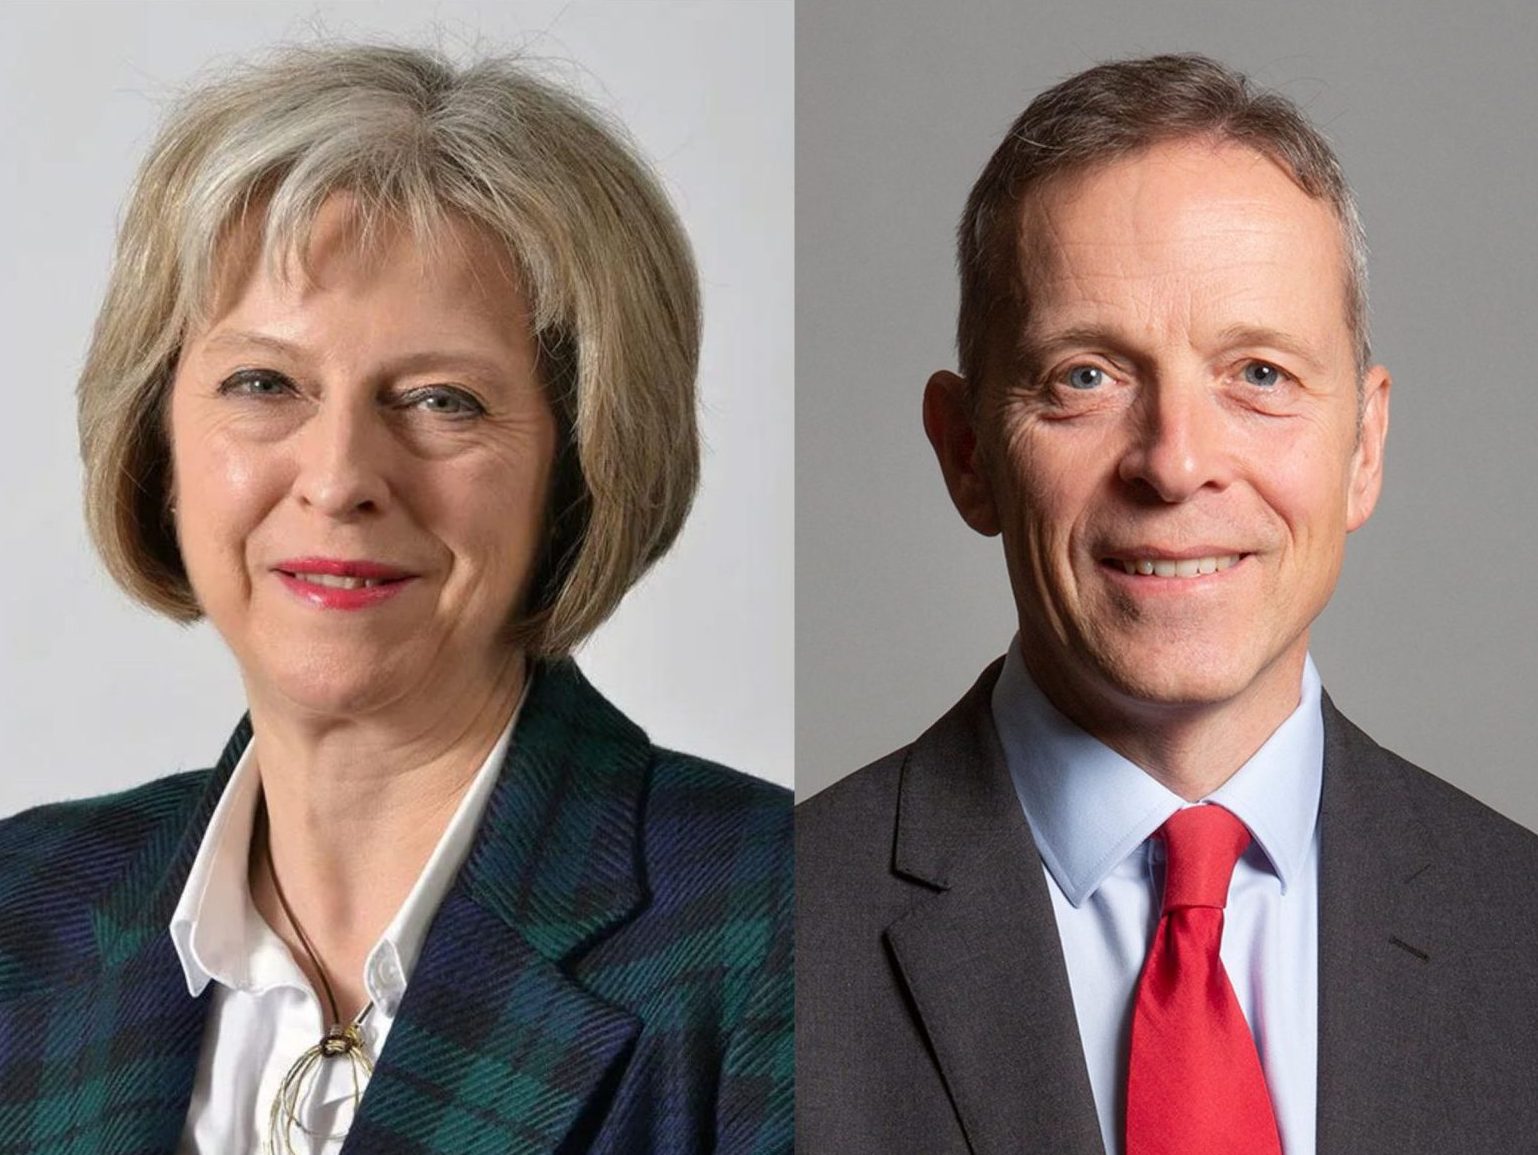 Matt Rodda MP and Theresa May MP